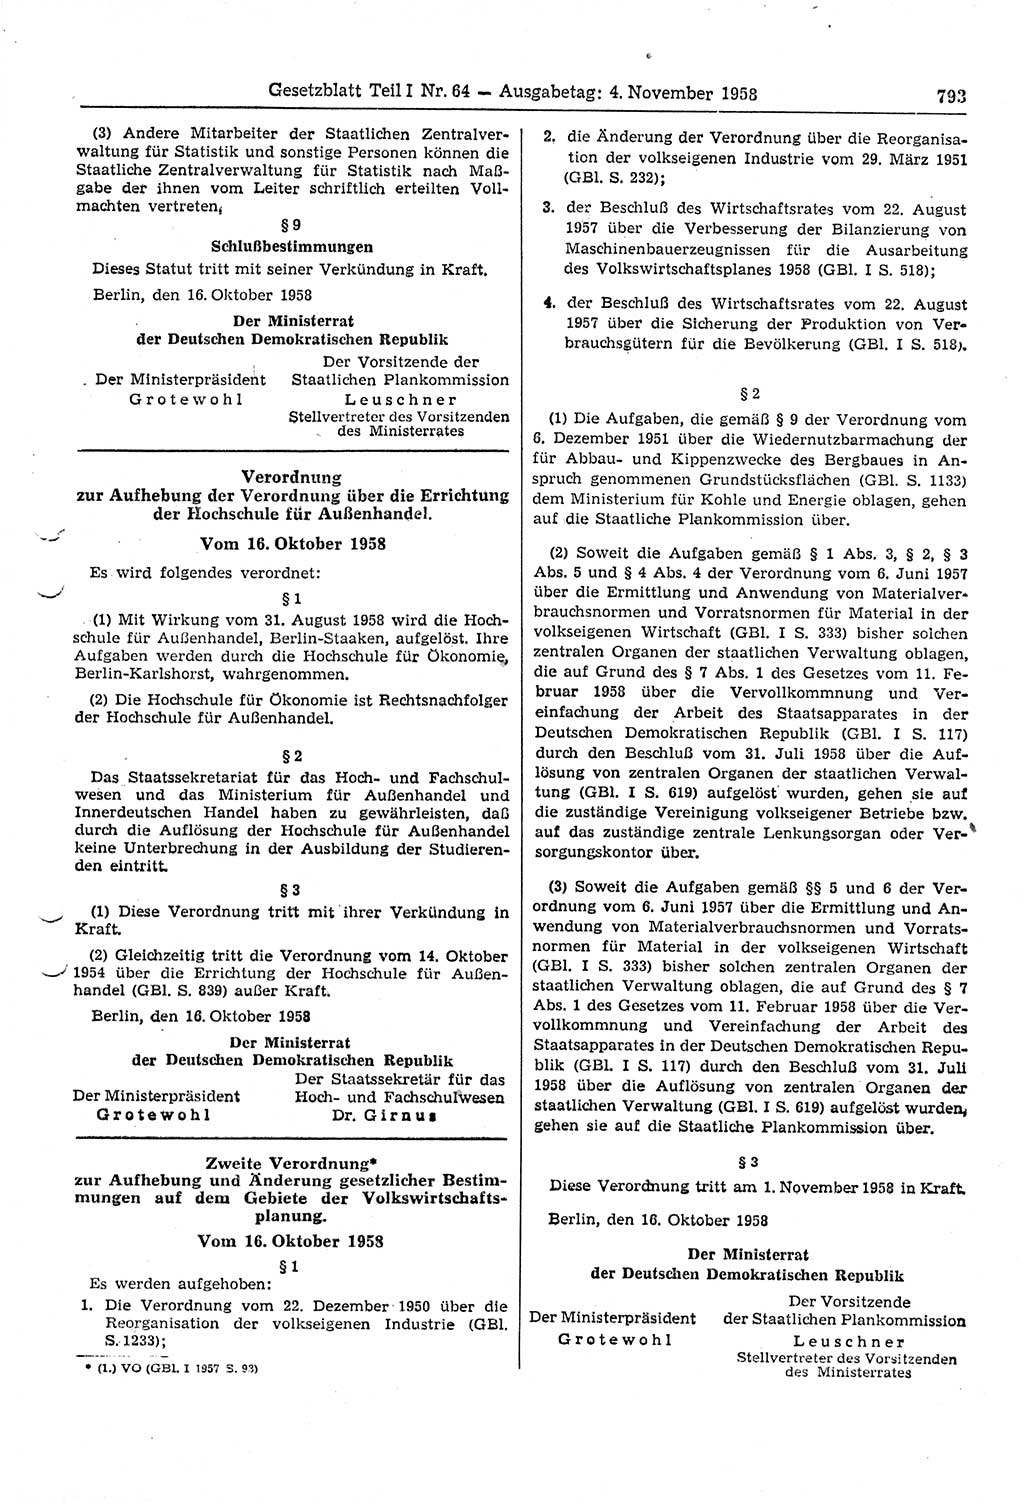 Gesetzblatt (GBl.) der Deutschen Demokratischen Republik (DDR) Teil Ⅰ 1958, Seite 793 (GBl. DDR Ⅰ 1958, S. 793)